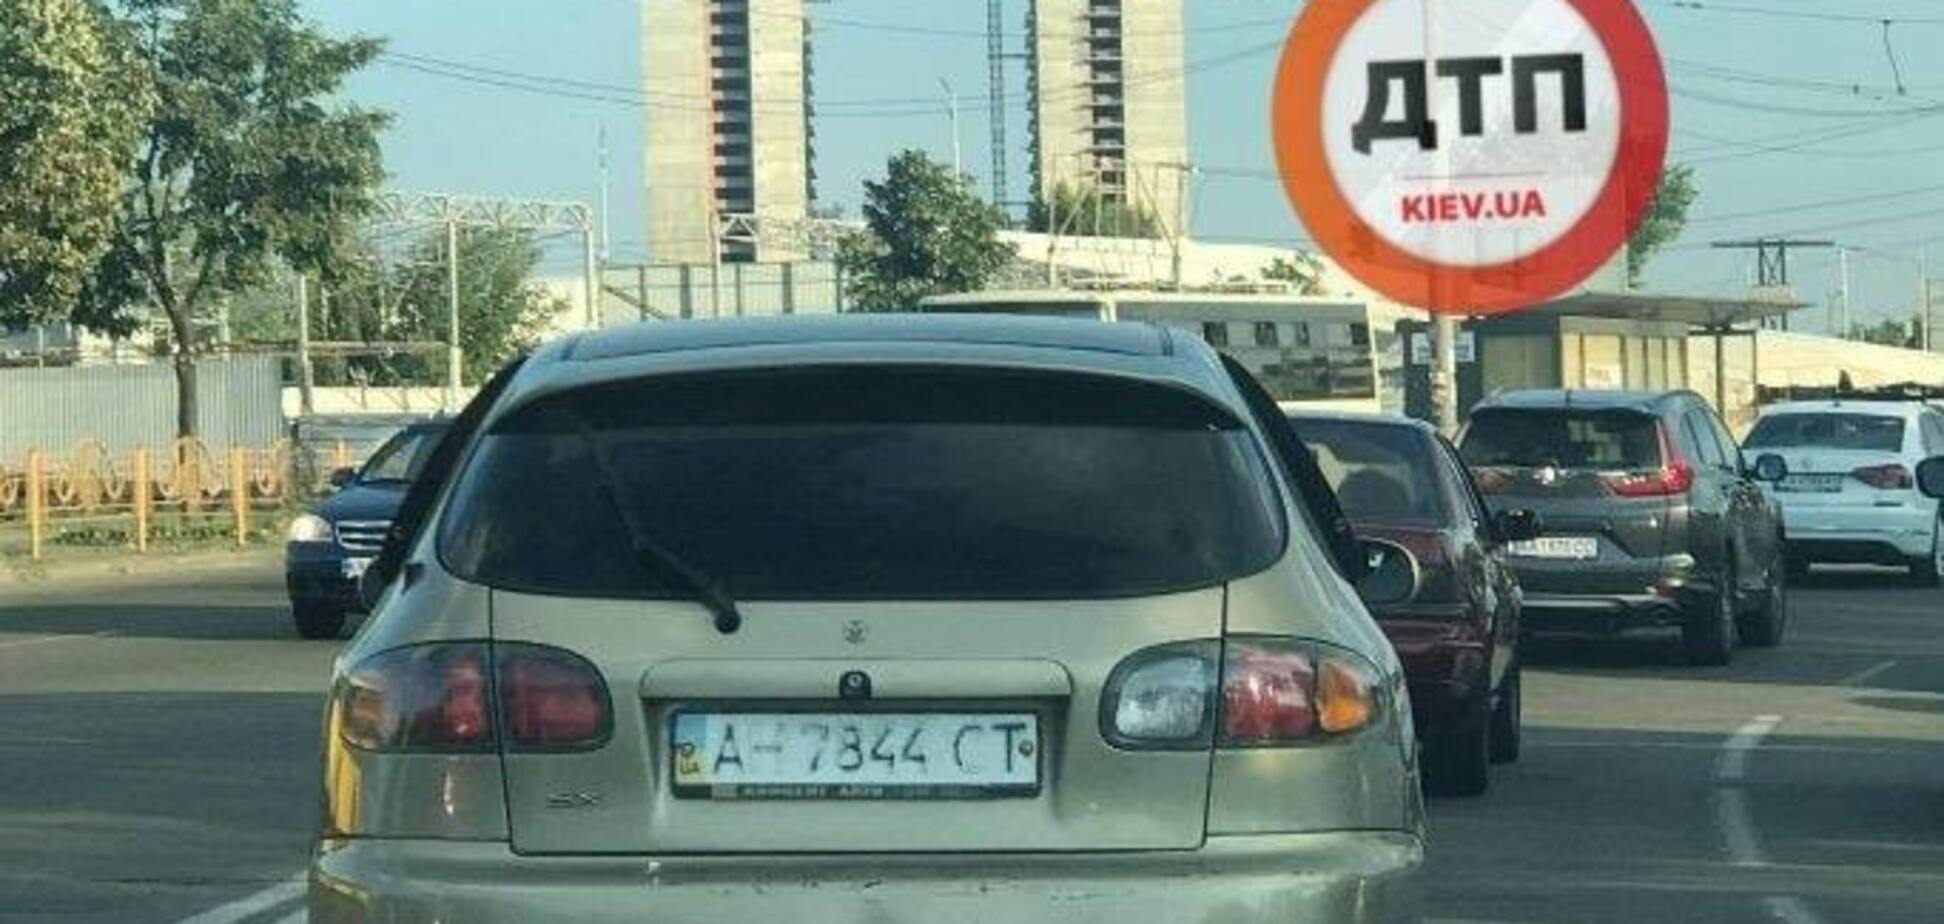 Українські водії стали активно замазувати номери своїх авто